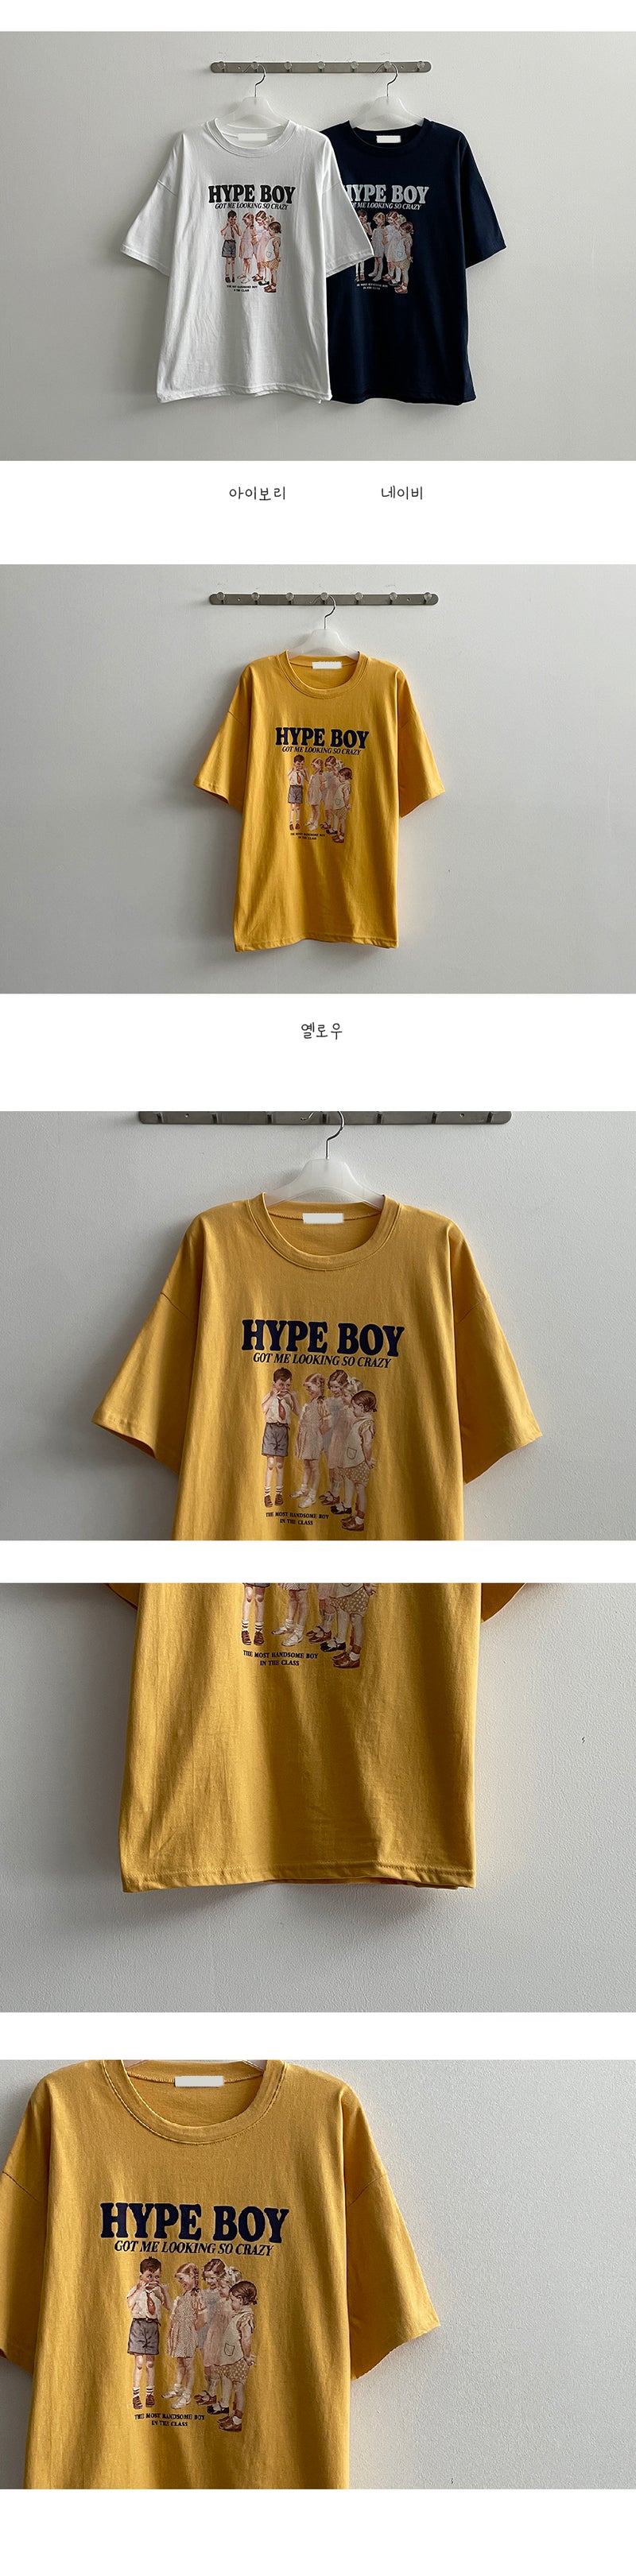 サマーボーイショートスリーブTシャツ / Summer Boy Short-sleeved T-shirt